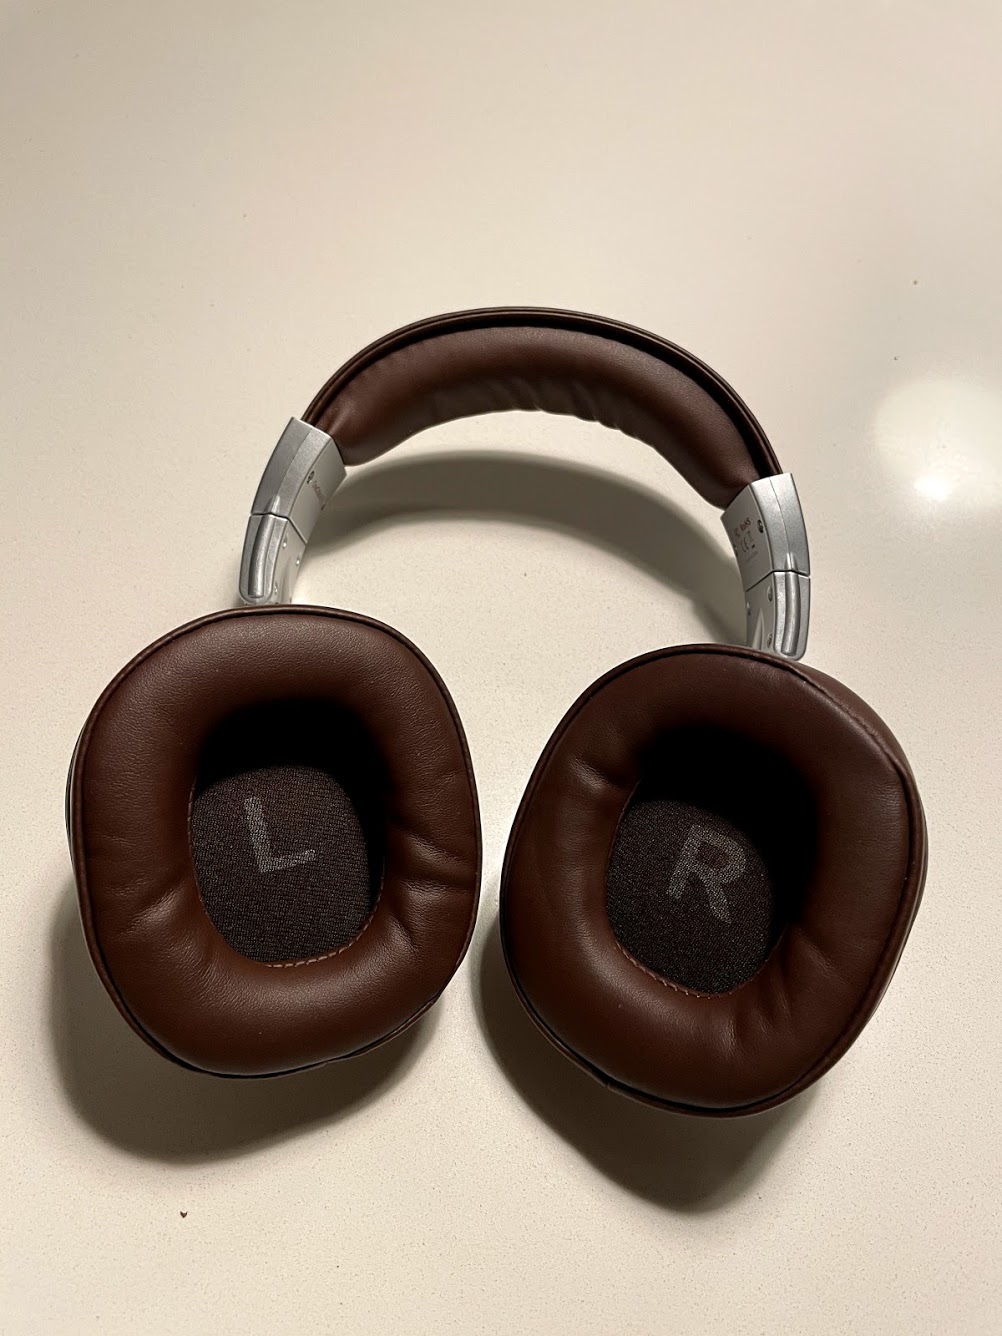 test af oneodio a70 bluetooth headset for kids adults noANC soft cheap billige høretelefoner anmeldelse til børn ingen støjreduktion lang batteritid